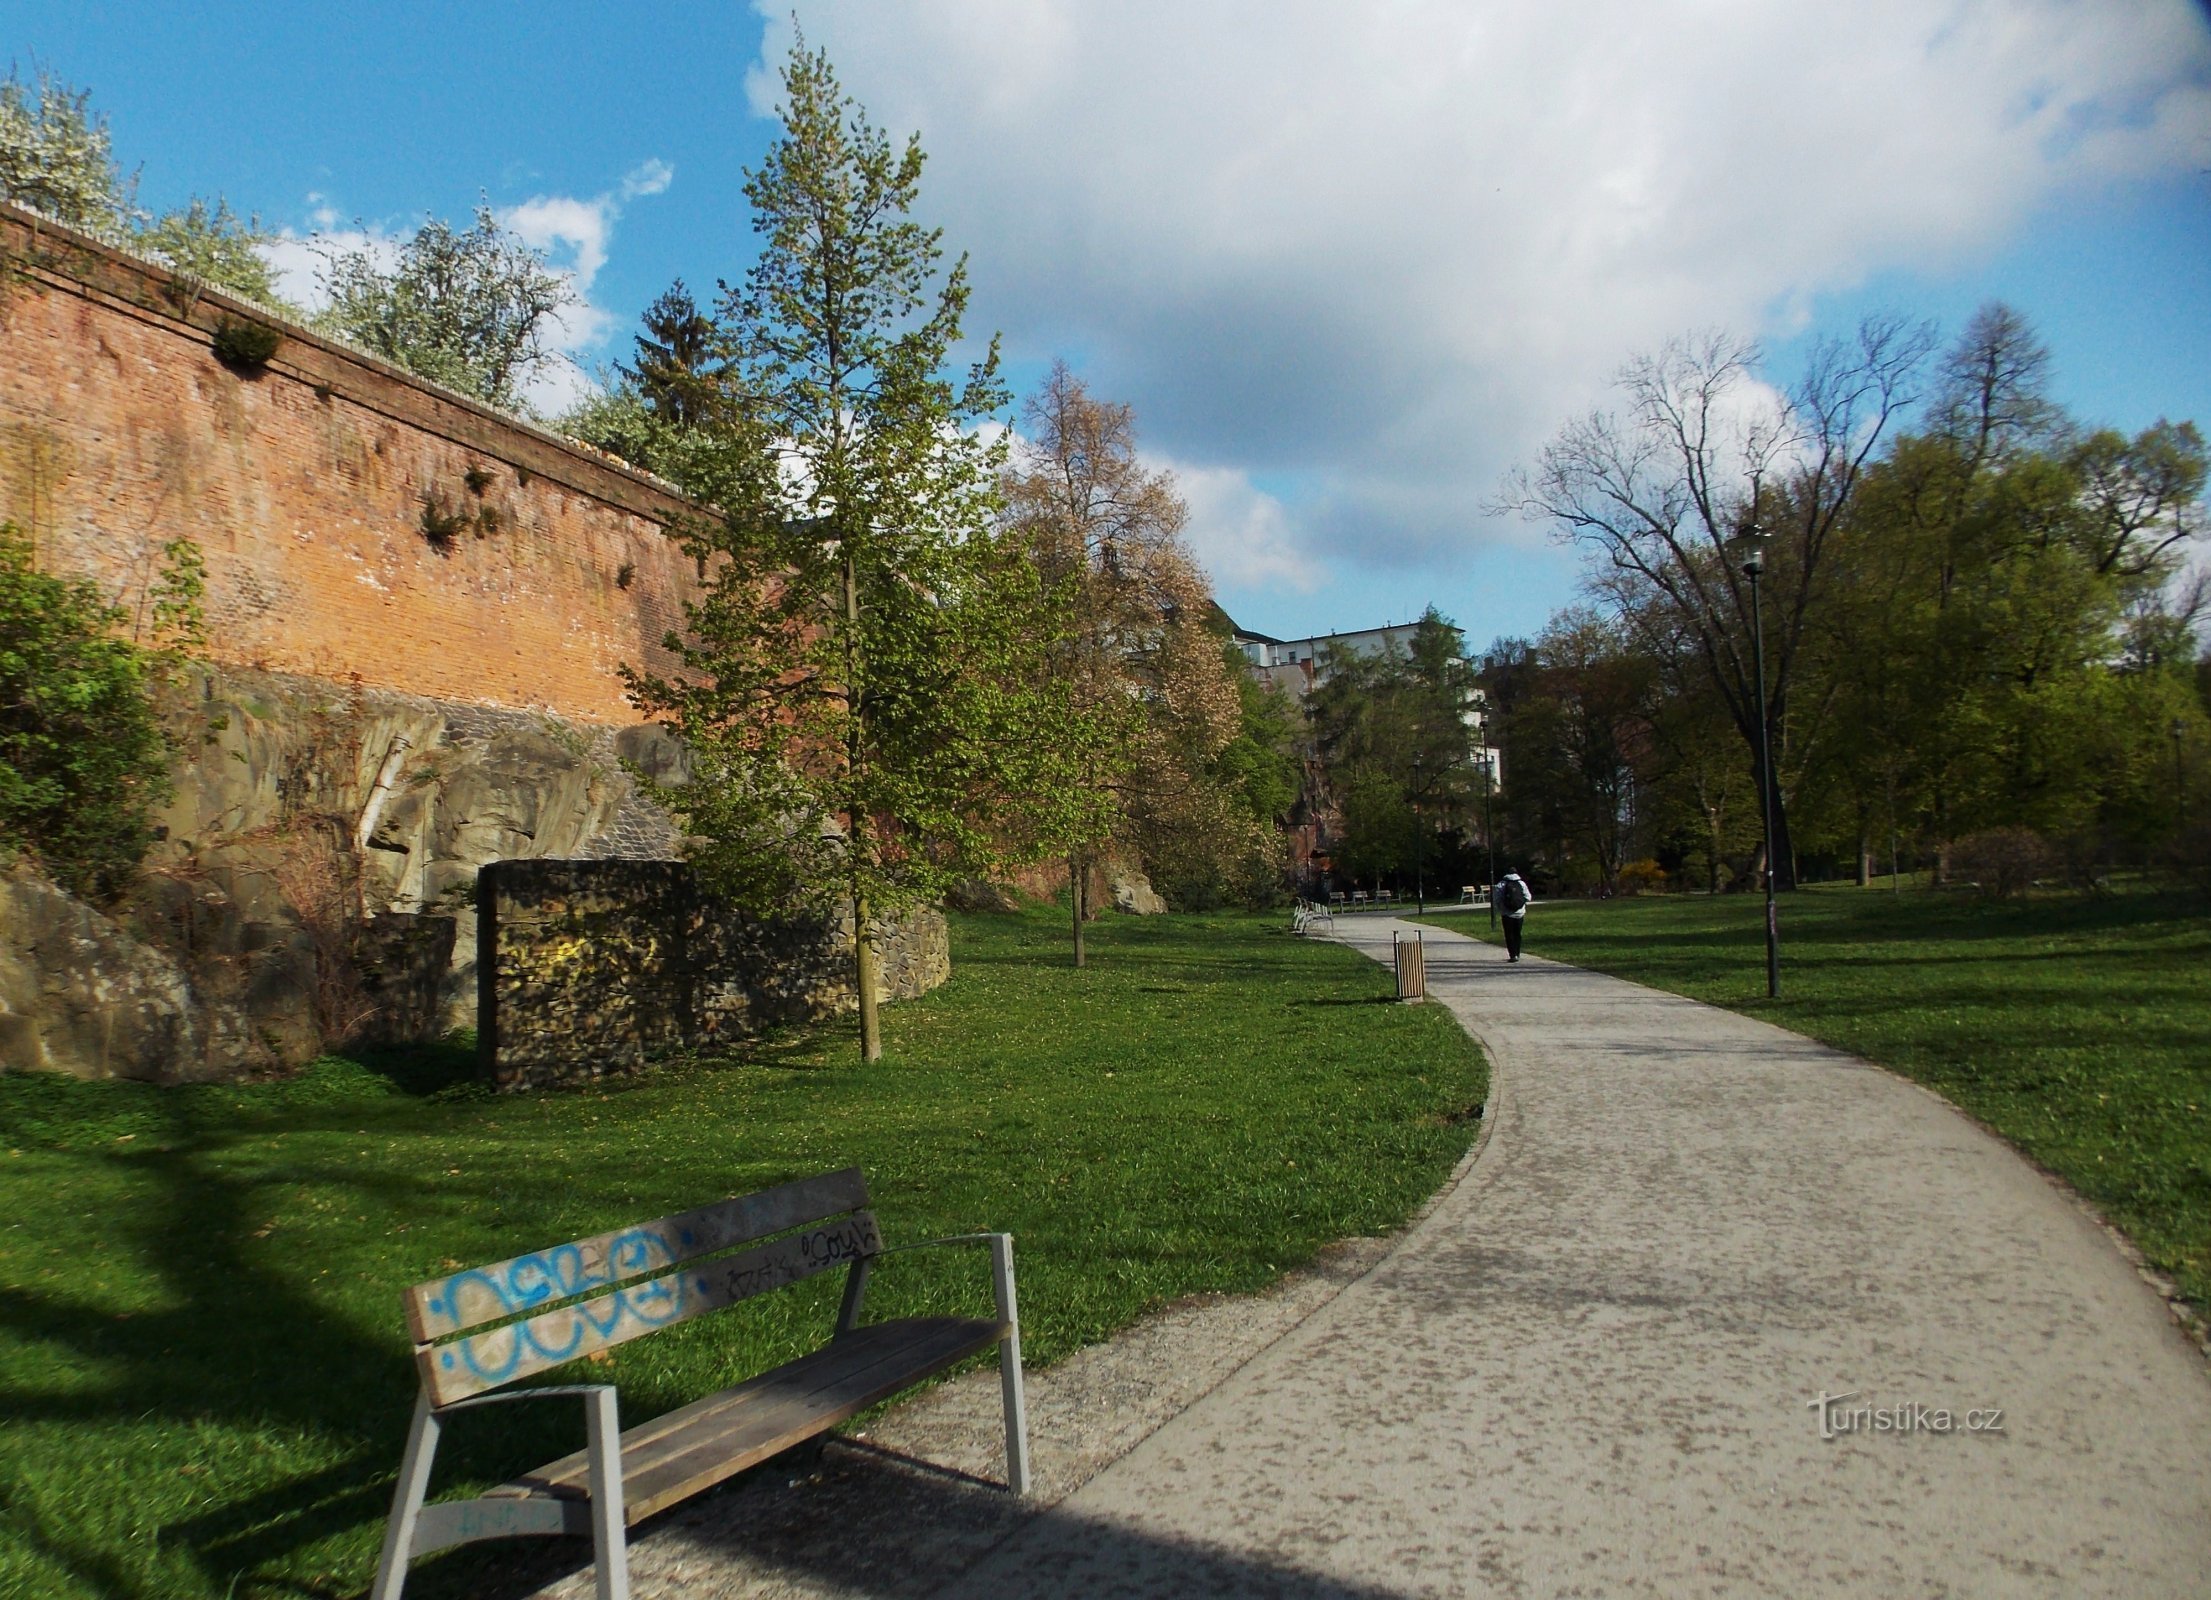 Olomouc, sprehod po mestnem parku - Bezručovy sady